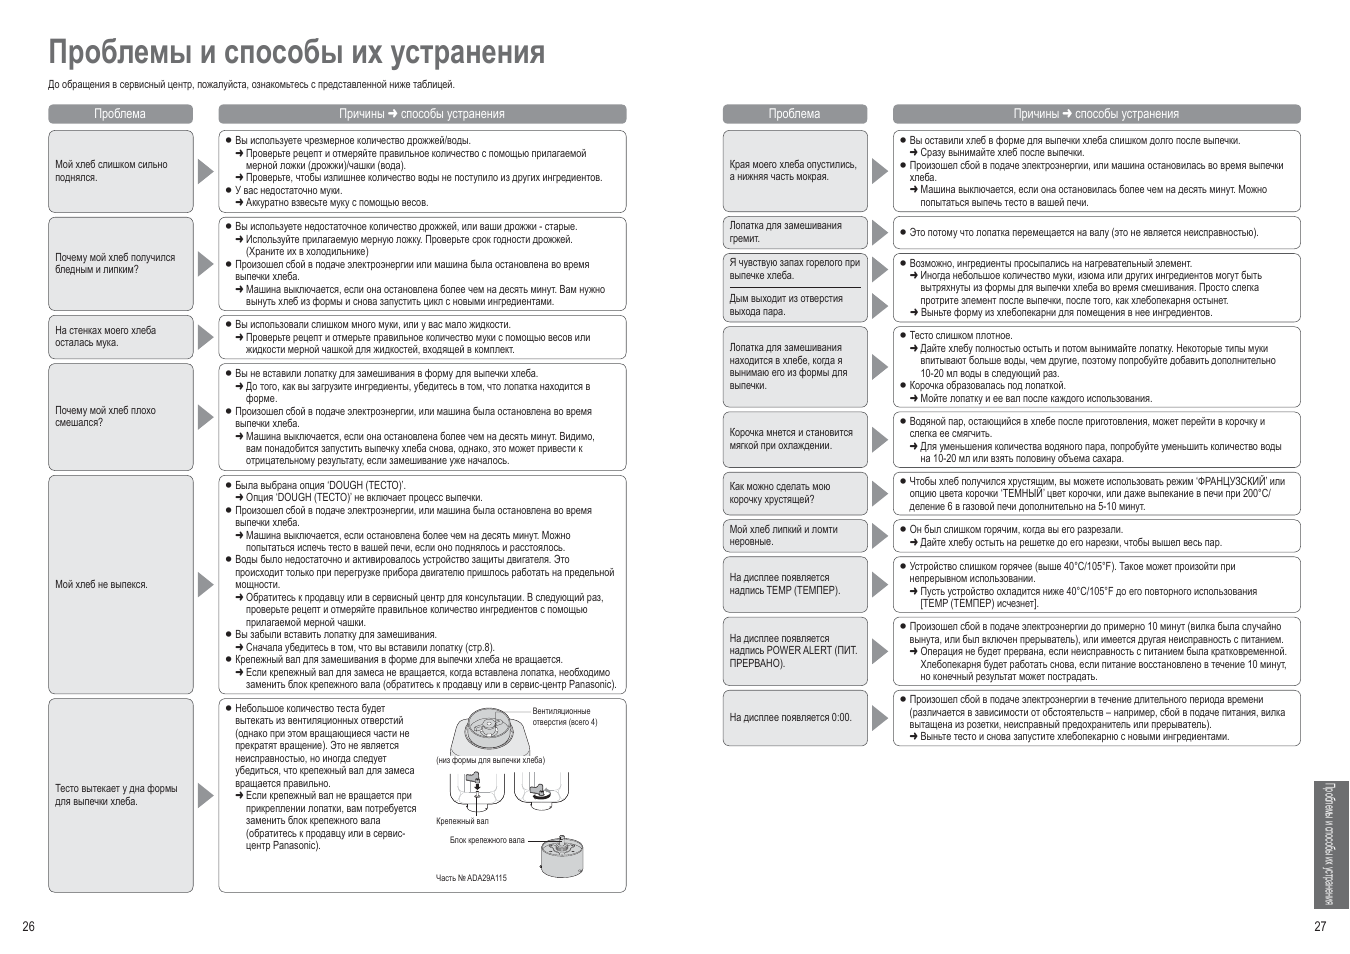 Проблемы и способы их устранения | Инструкция по эксплуатации Panasonic SD-257 | Страница 26 / 52